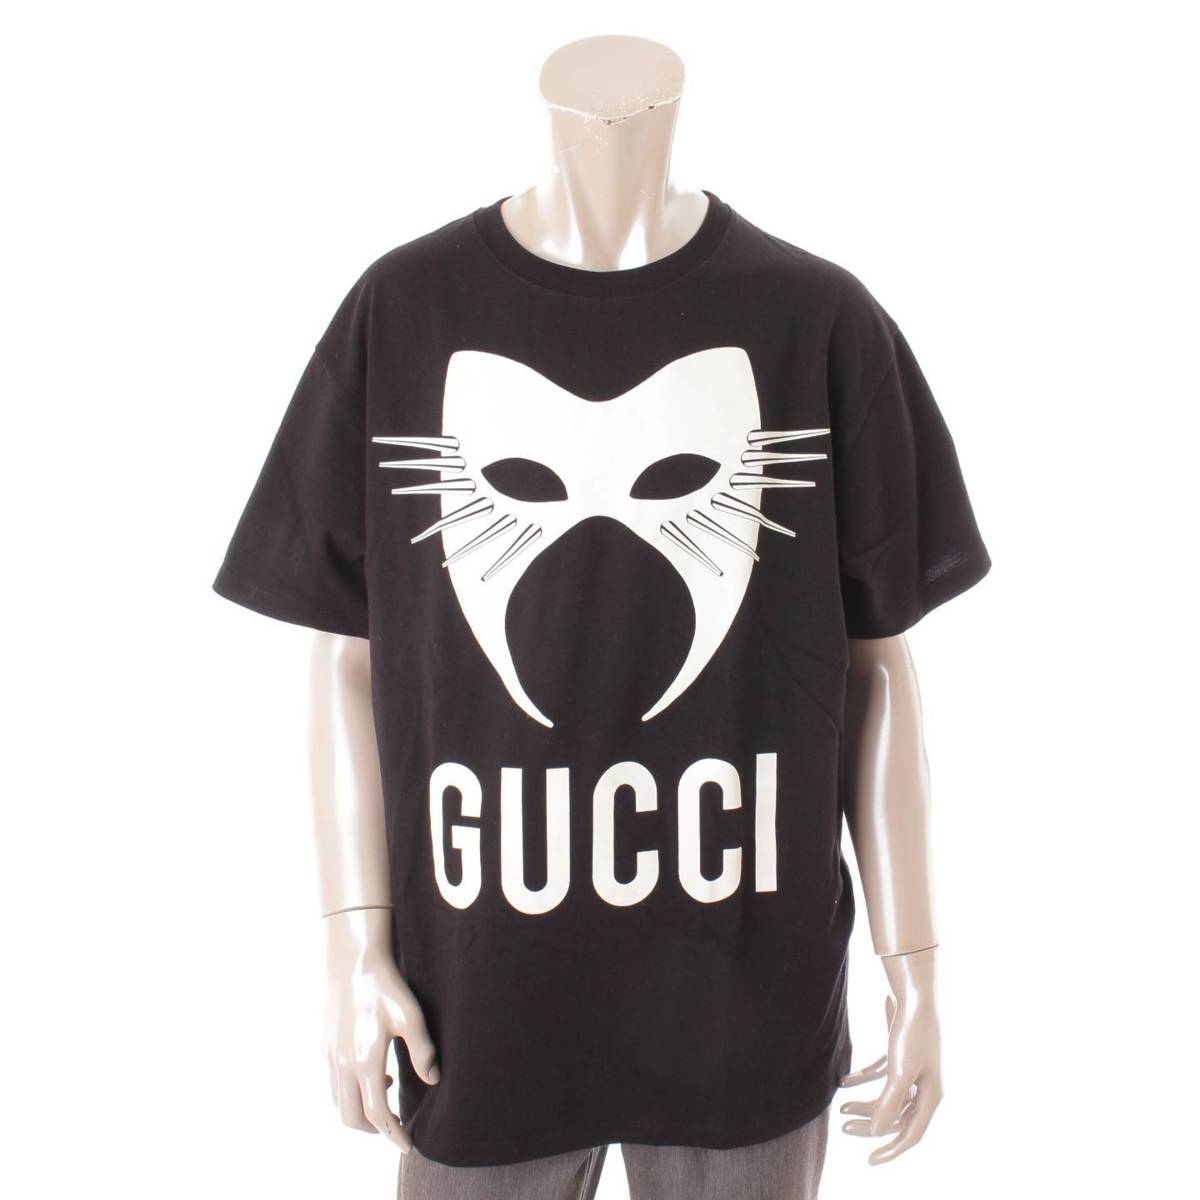 グッチ(Gucci) メンズ マニフェスト オーバーサイズ Tシャツ 565806 ブラック M